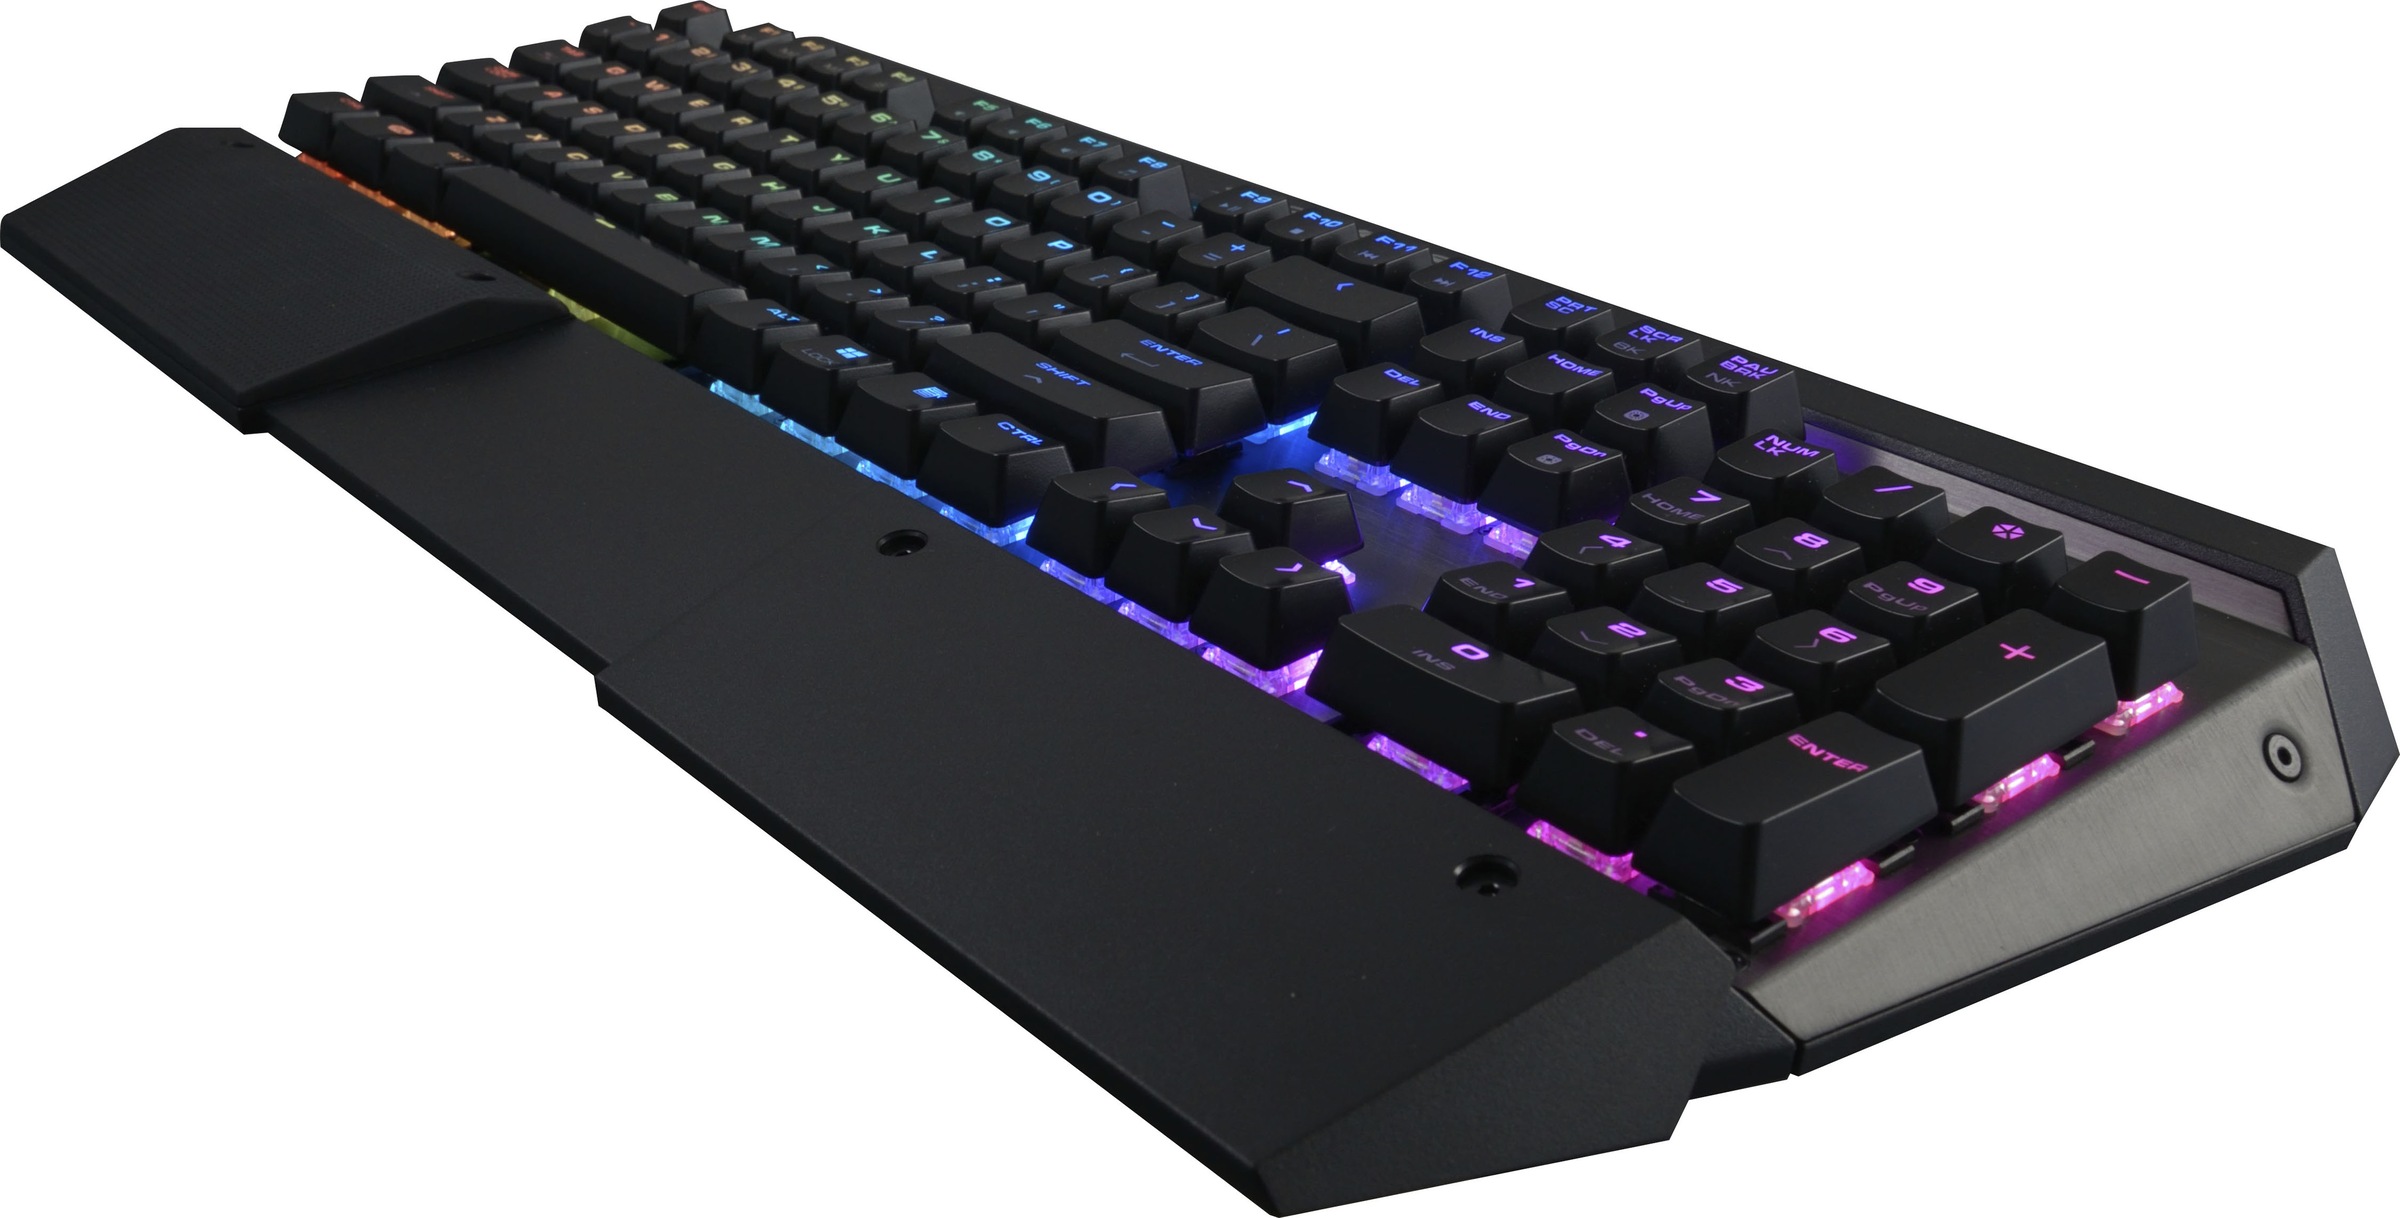 Cougar Gaming-Tastatur »ULTIMUS RGB Mechanisch«, (Easy-Switch-Fn-Tasten-Lautstärkeregler-Makro-Tasten-Multimedia-Tasten-Profil-Speicher-Windows-Sperrtaste-Ziffernblock), CHERRY RGB MX-Tasten